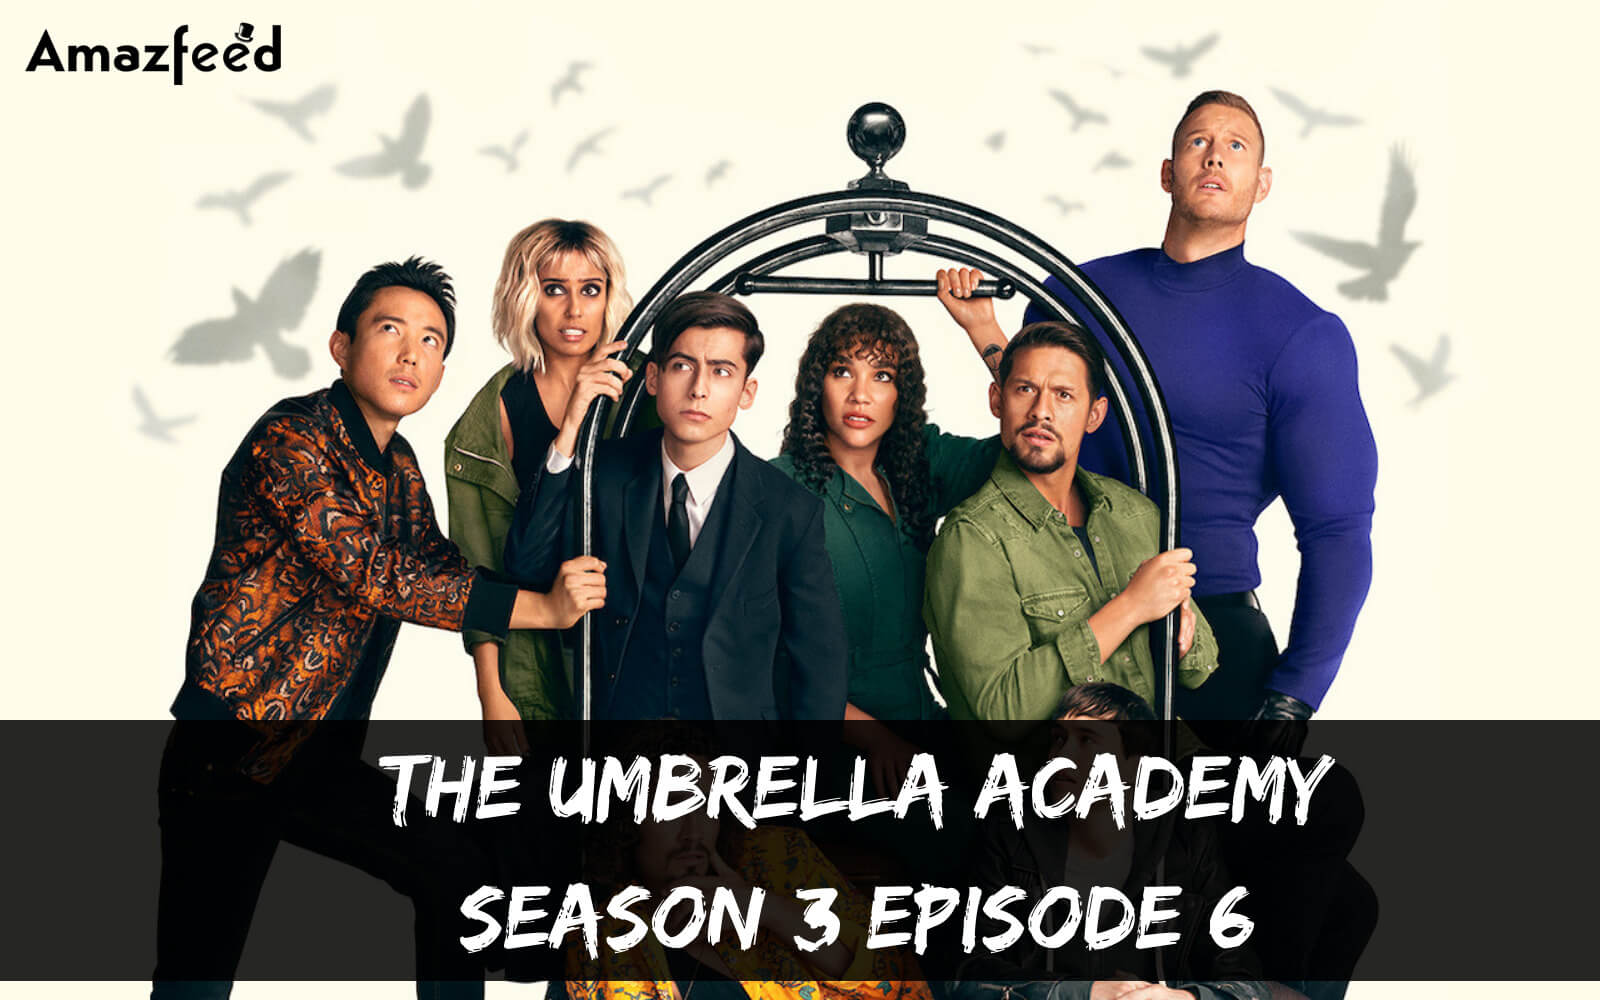 The Umbrella Academy season 3 Episode 6 release date